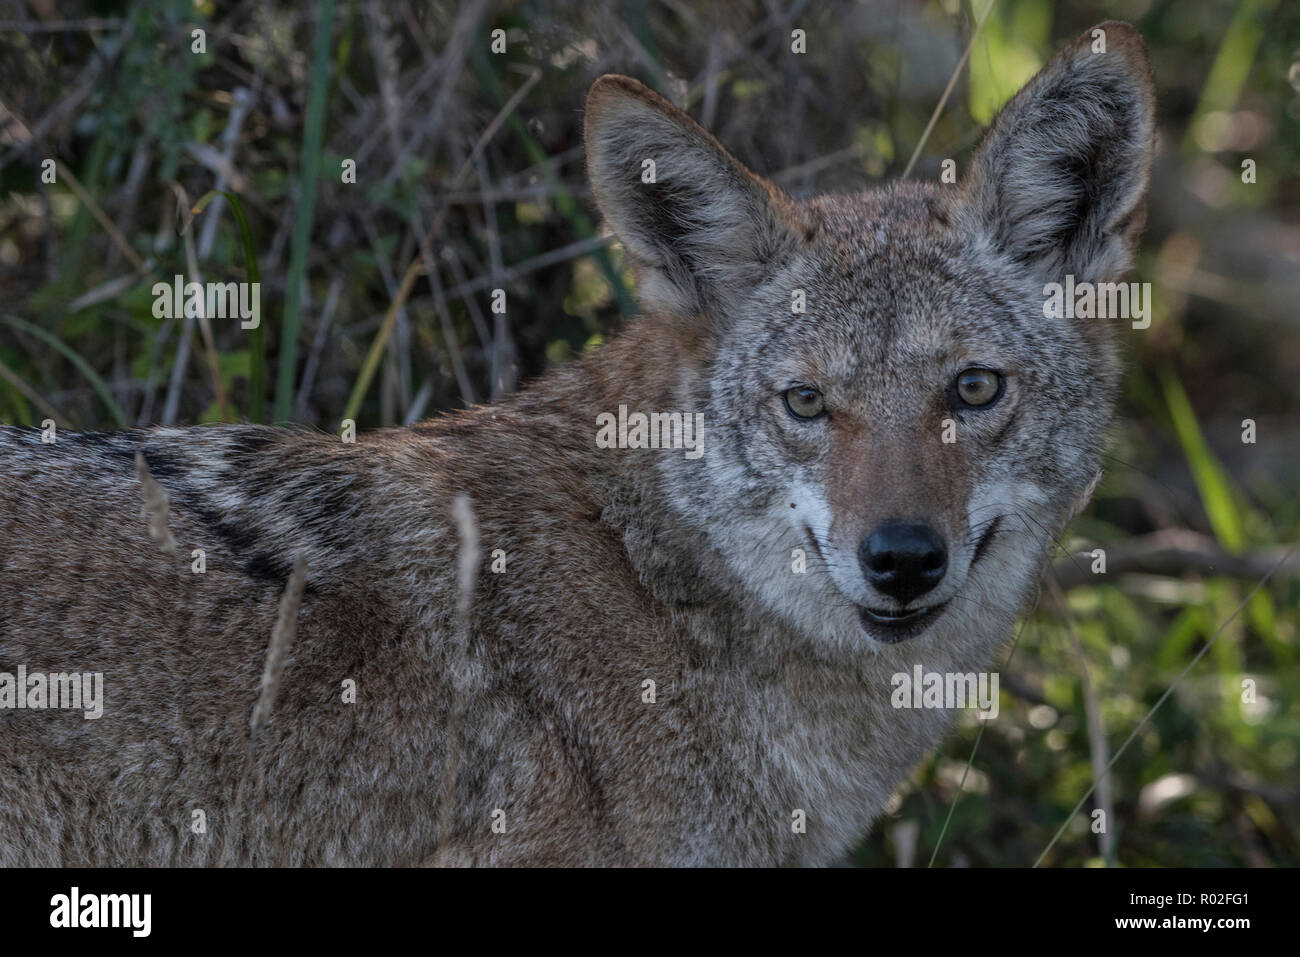 Un coyote (Canis latrans) de Pt. Reyes National Seashore mirando directamente a la cámara. Foto de stock